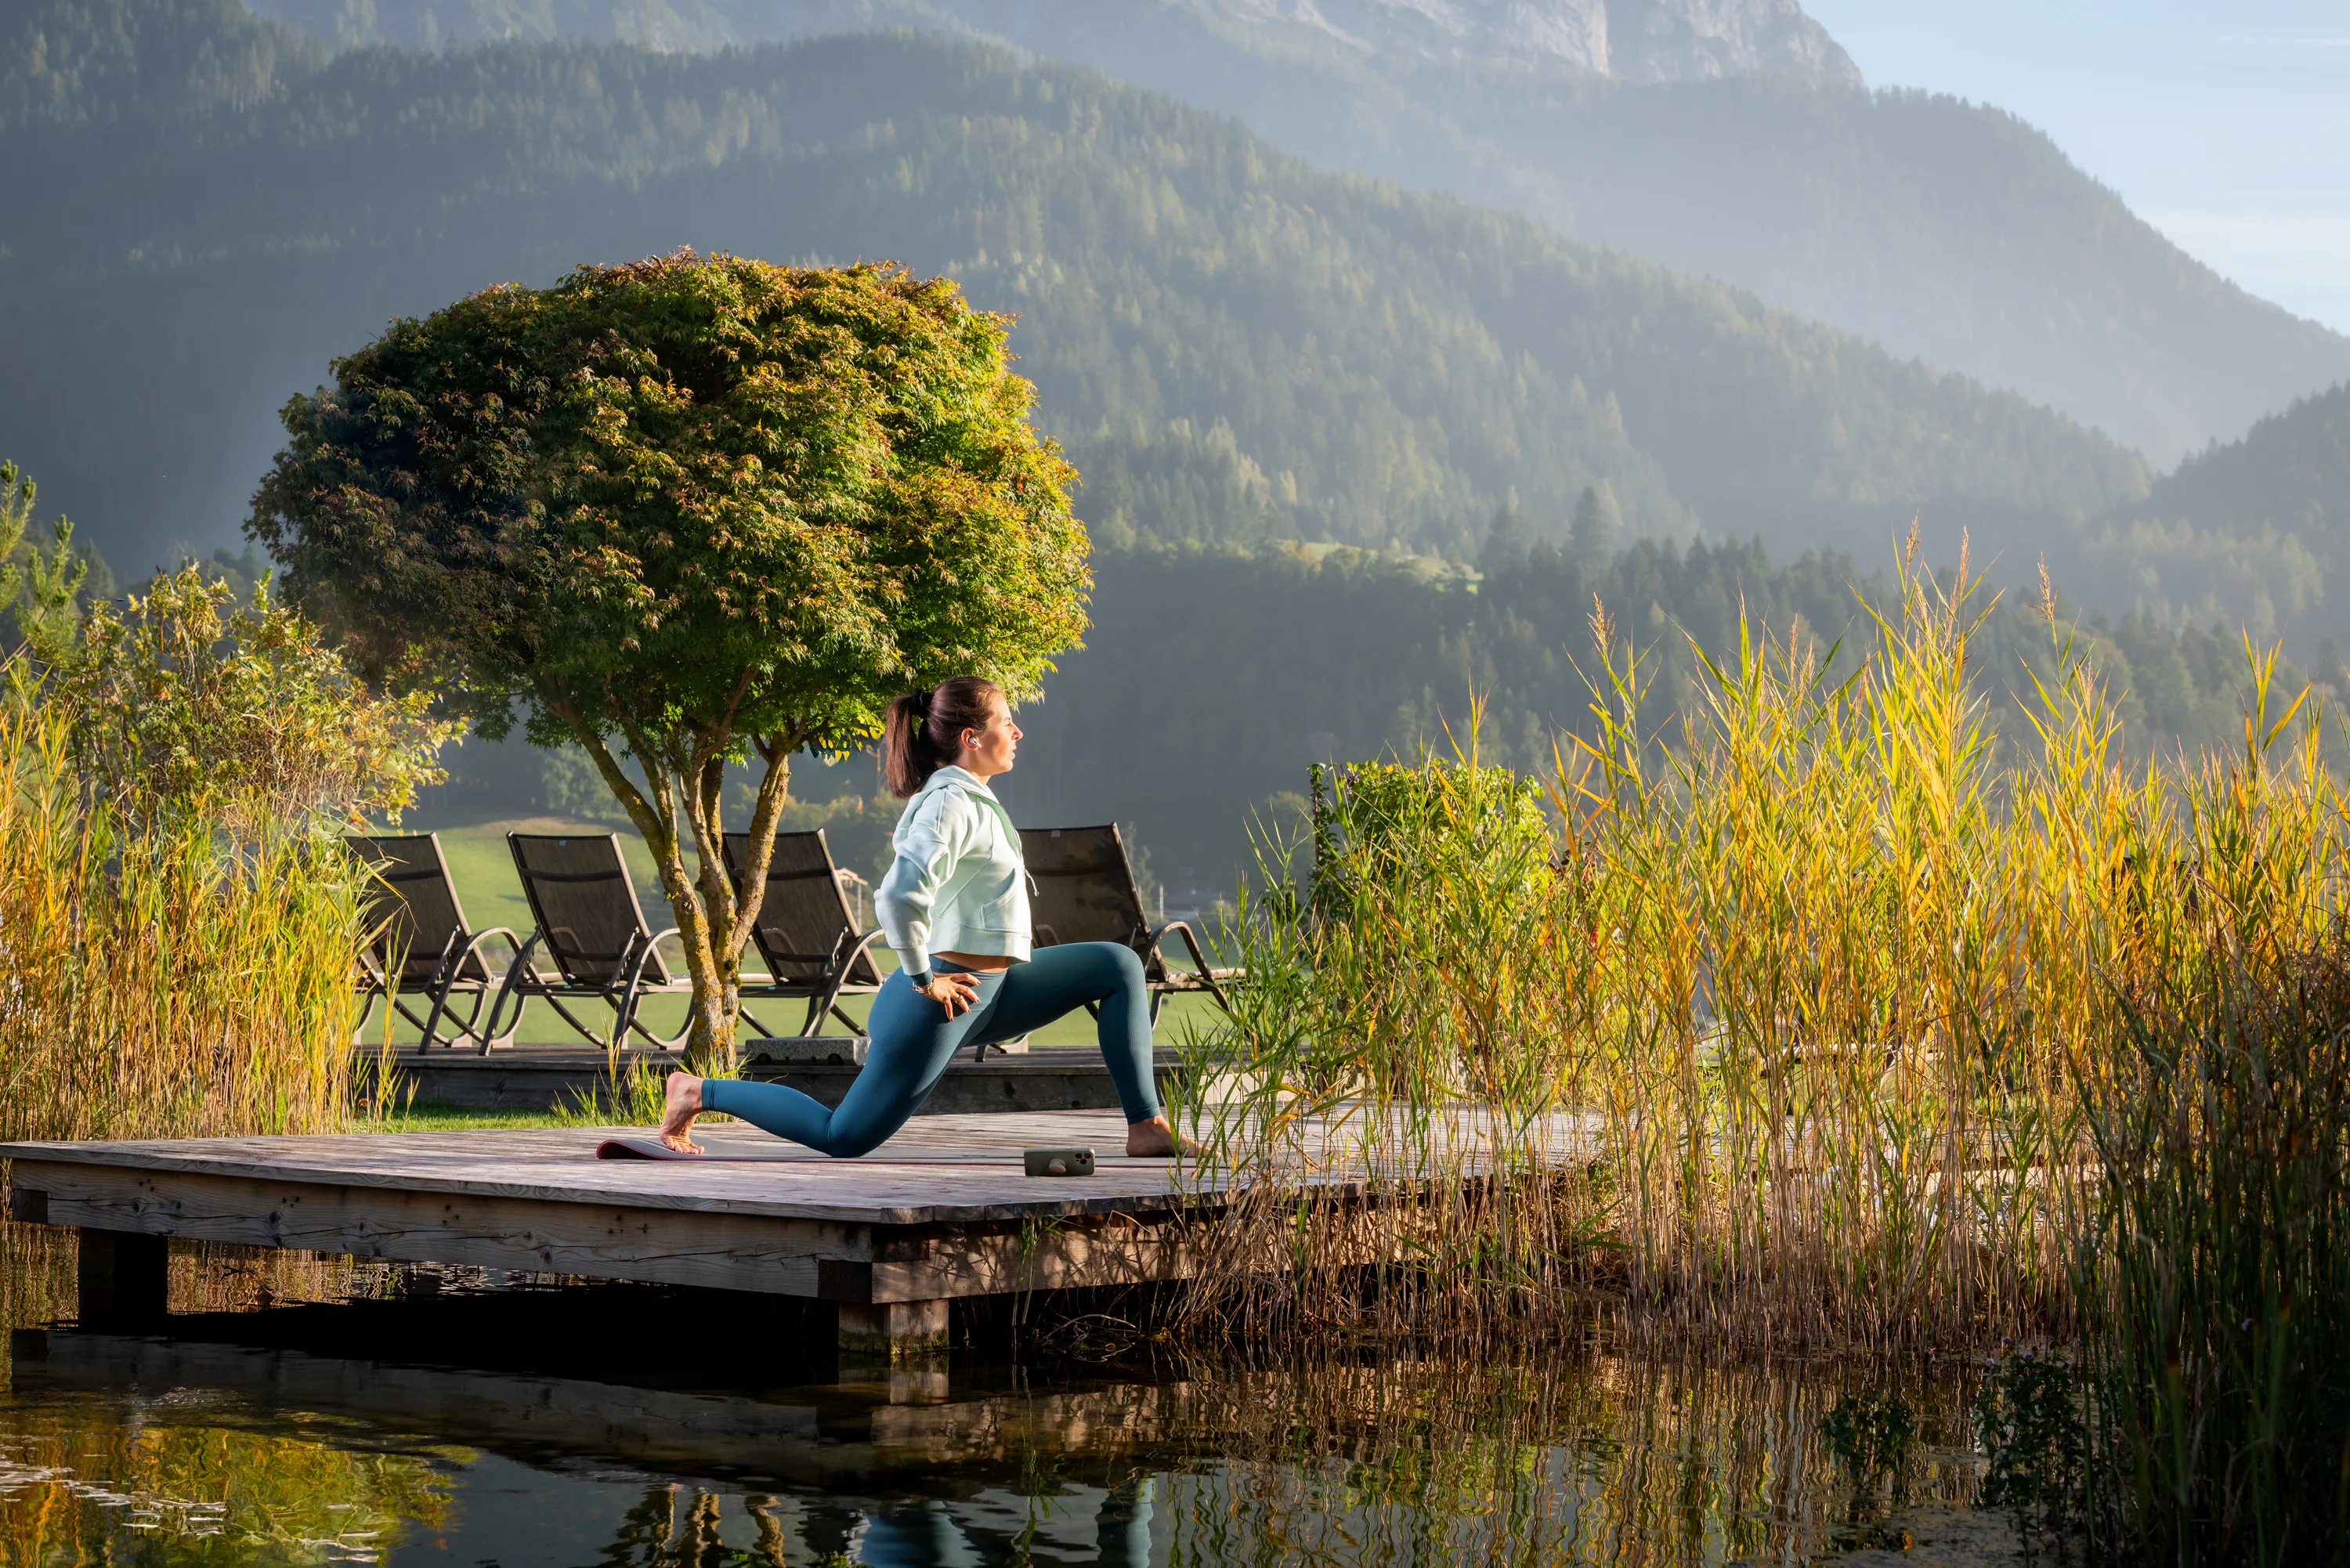 Hotelgast praktiziert morgens einen Peloton-Yoga Kurs am Teich auf dem Hotelgelände für einen entspannten Tagesbeginn.